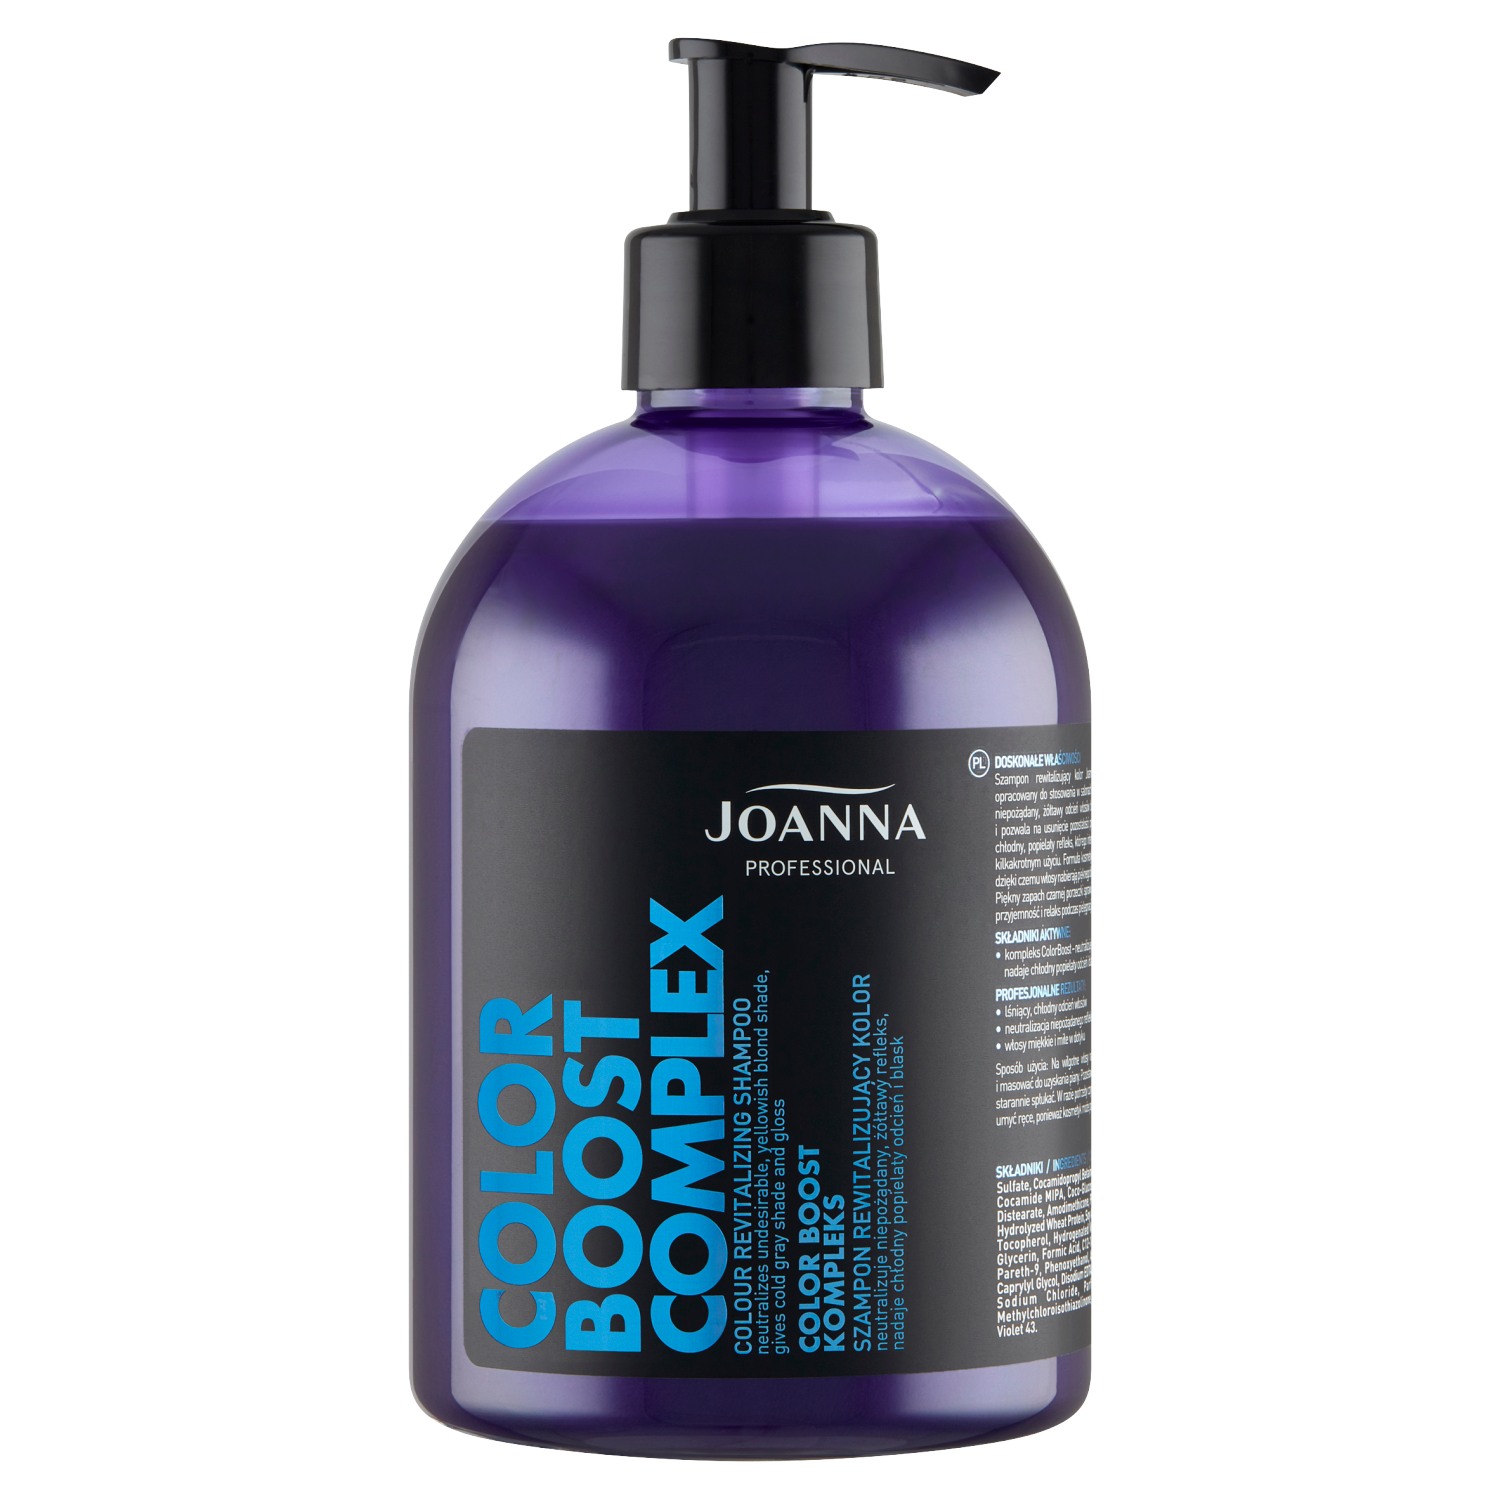 Joanna Professional Color Boost Complex восстанавливающий шампунь для светлых волос, 500 мл joanna кондиционер нейтрализатор желтизны для волос joanna color boost complex с протеинами пшеницы холодный пепельный 500 г